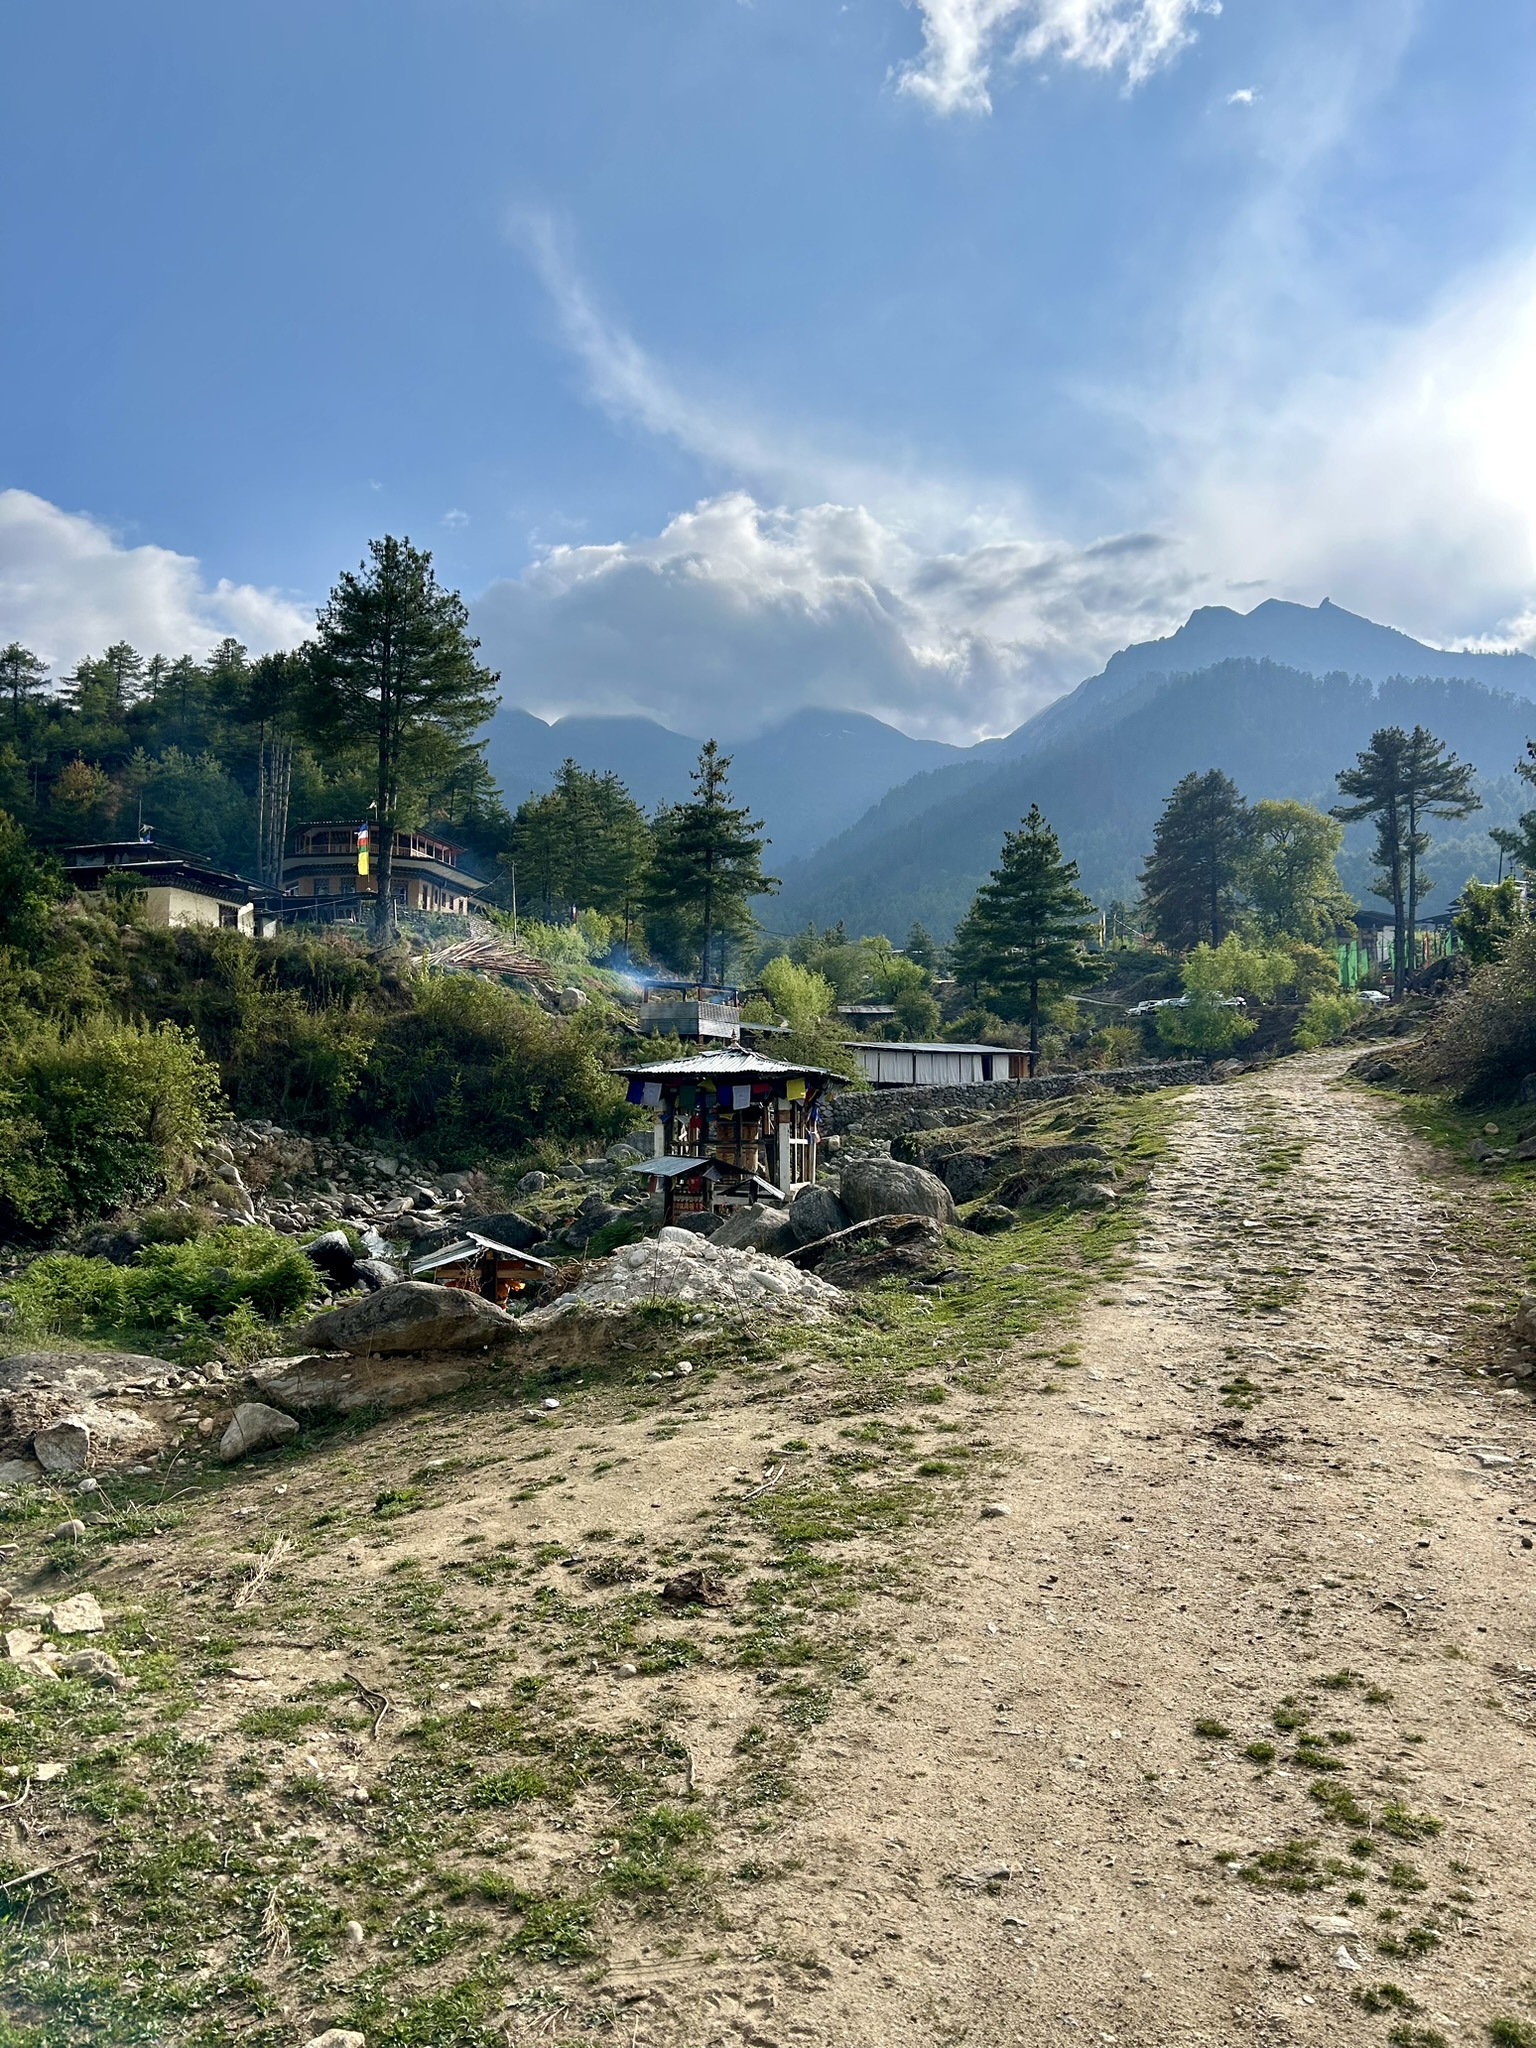 Haa vallei in Bhutan